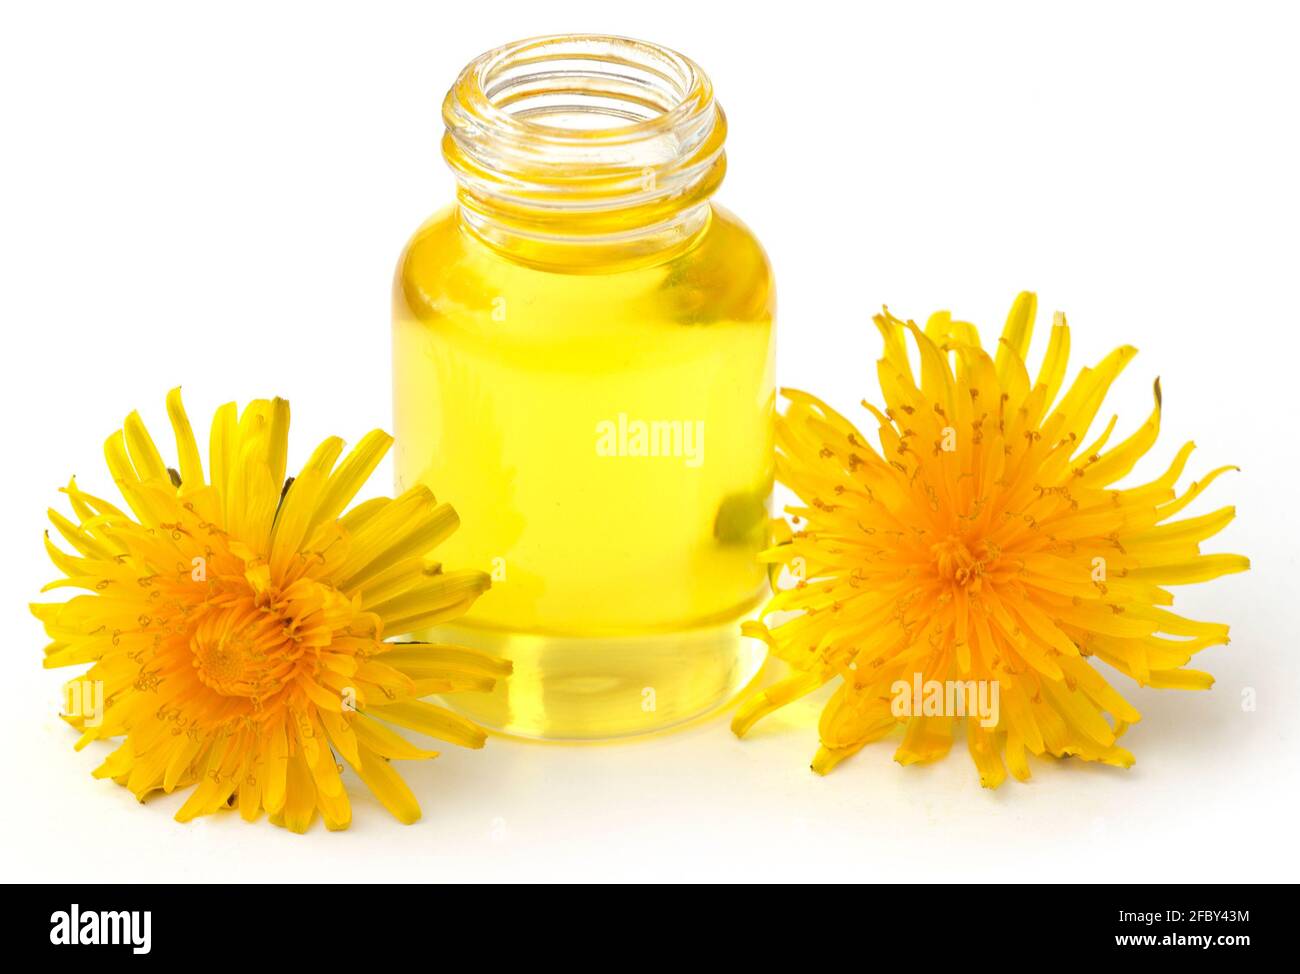 Pissenlit médicinal avec huile essentielle dans une bouteille Photo Stock -  Alamy